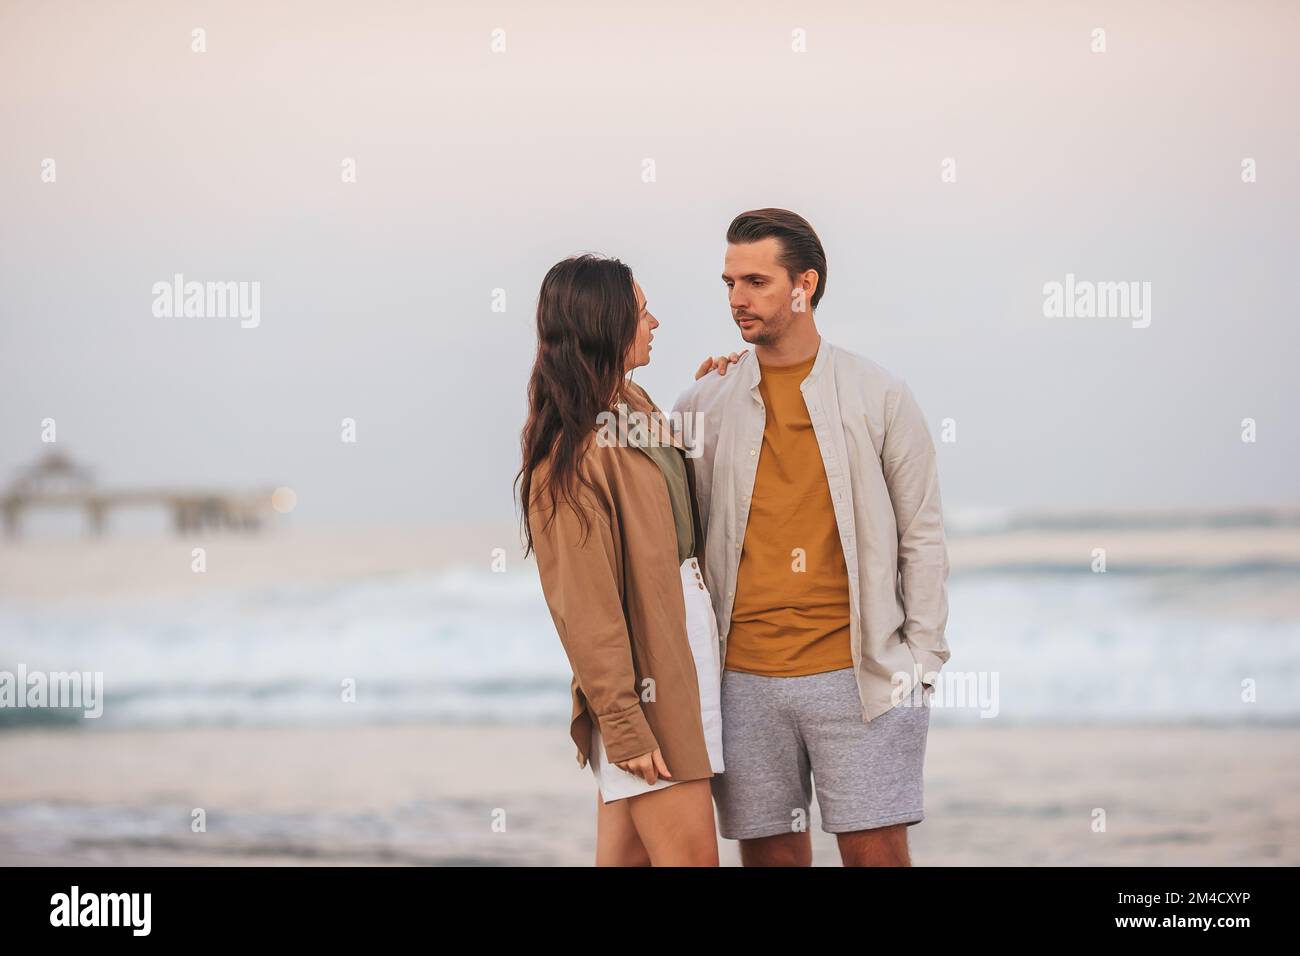 Una giovane coppia trascorre del tempo insieme in spiaggia Foto Stock